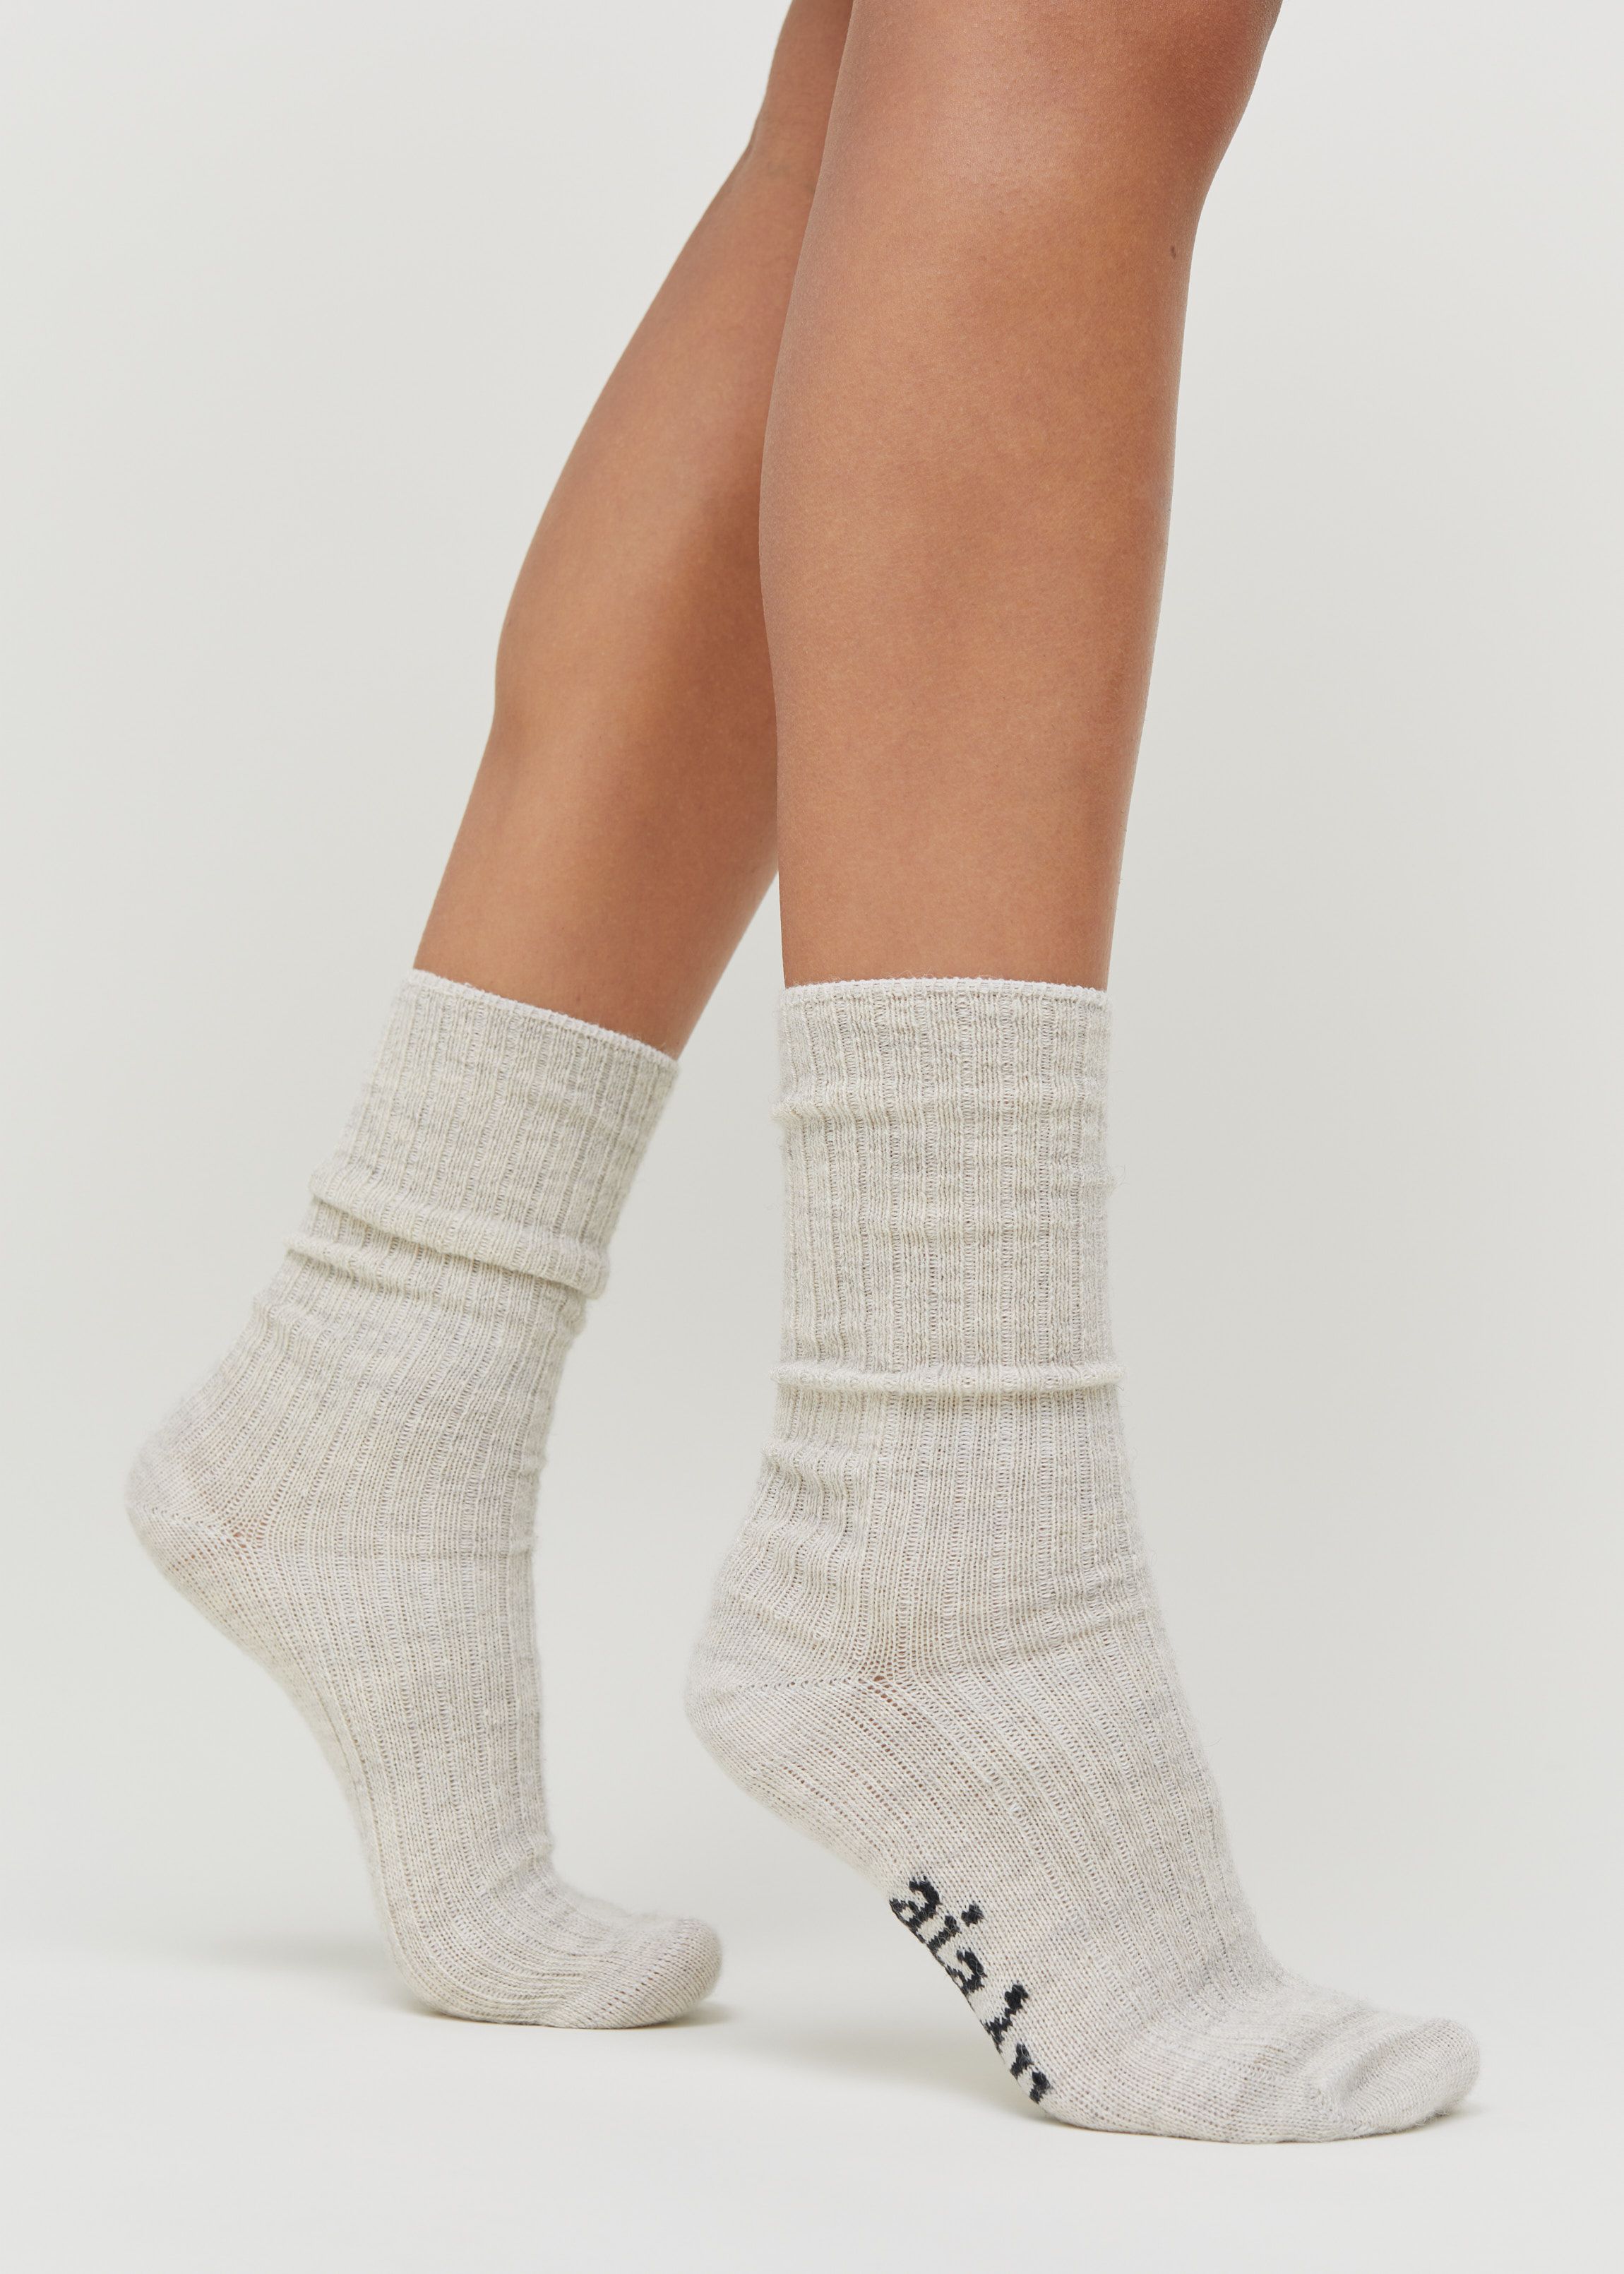 Llama Socks / Pure Bliss